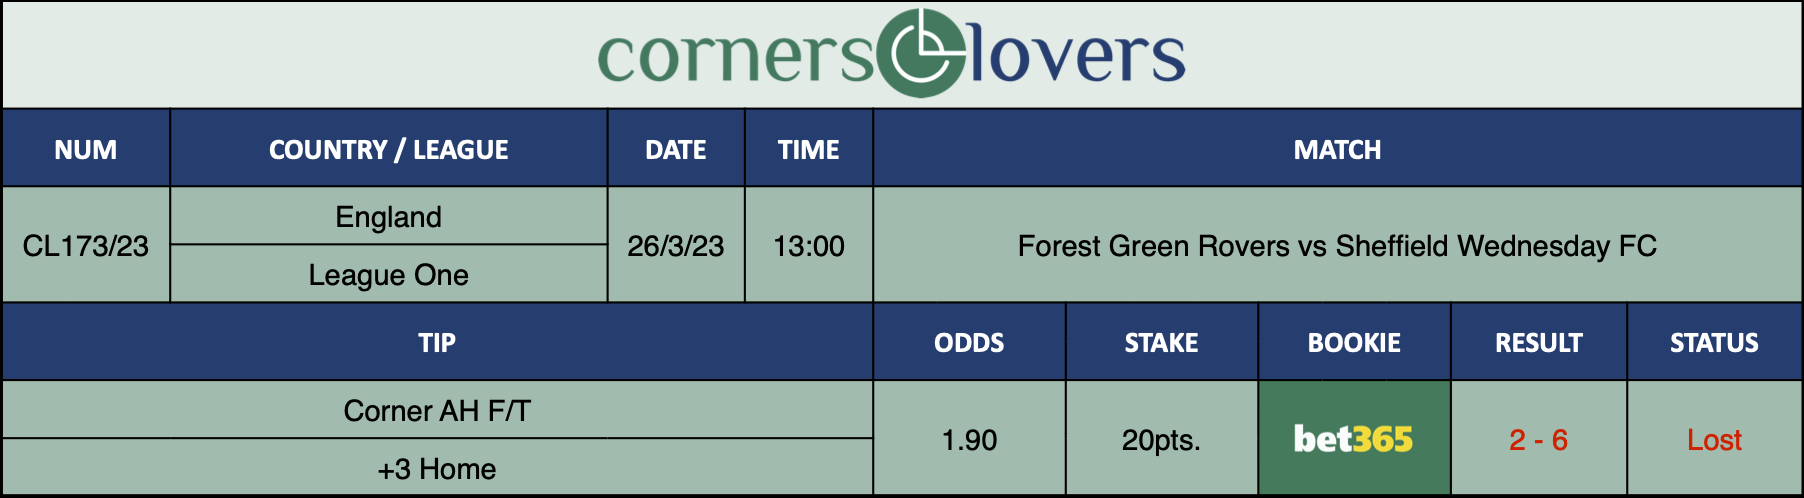 Resultados de nuestro consejo para el partido Forest Green Rovers vs Sheffield Wednesday FC el que se recomienda  Corner AH F/T +3 Home